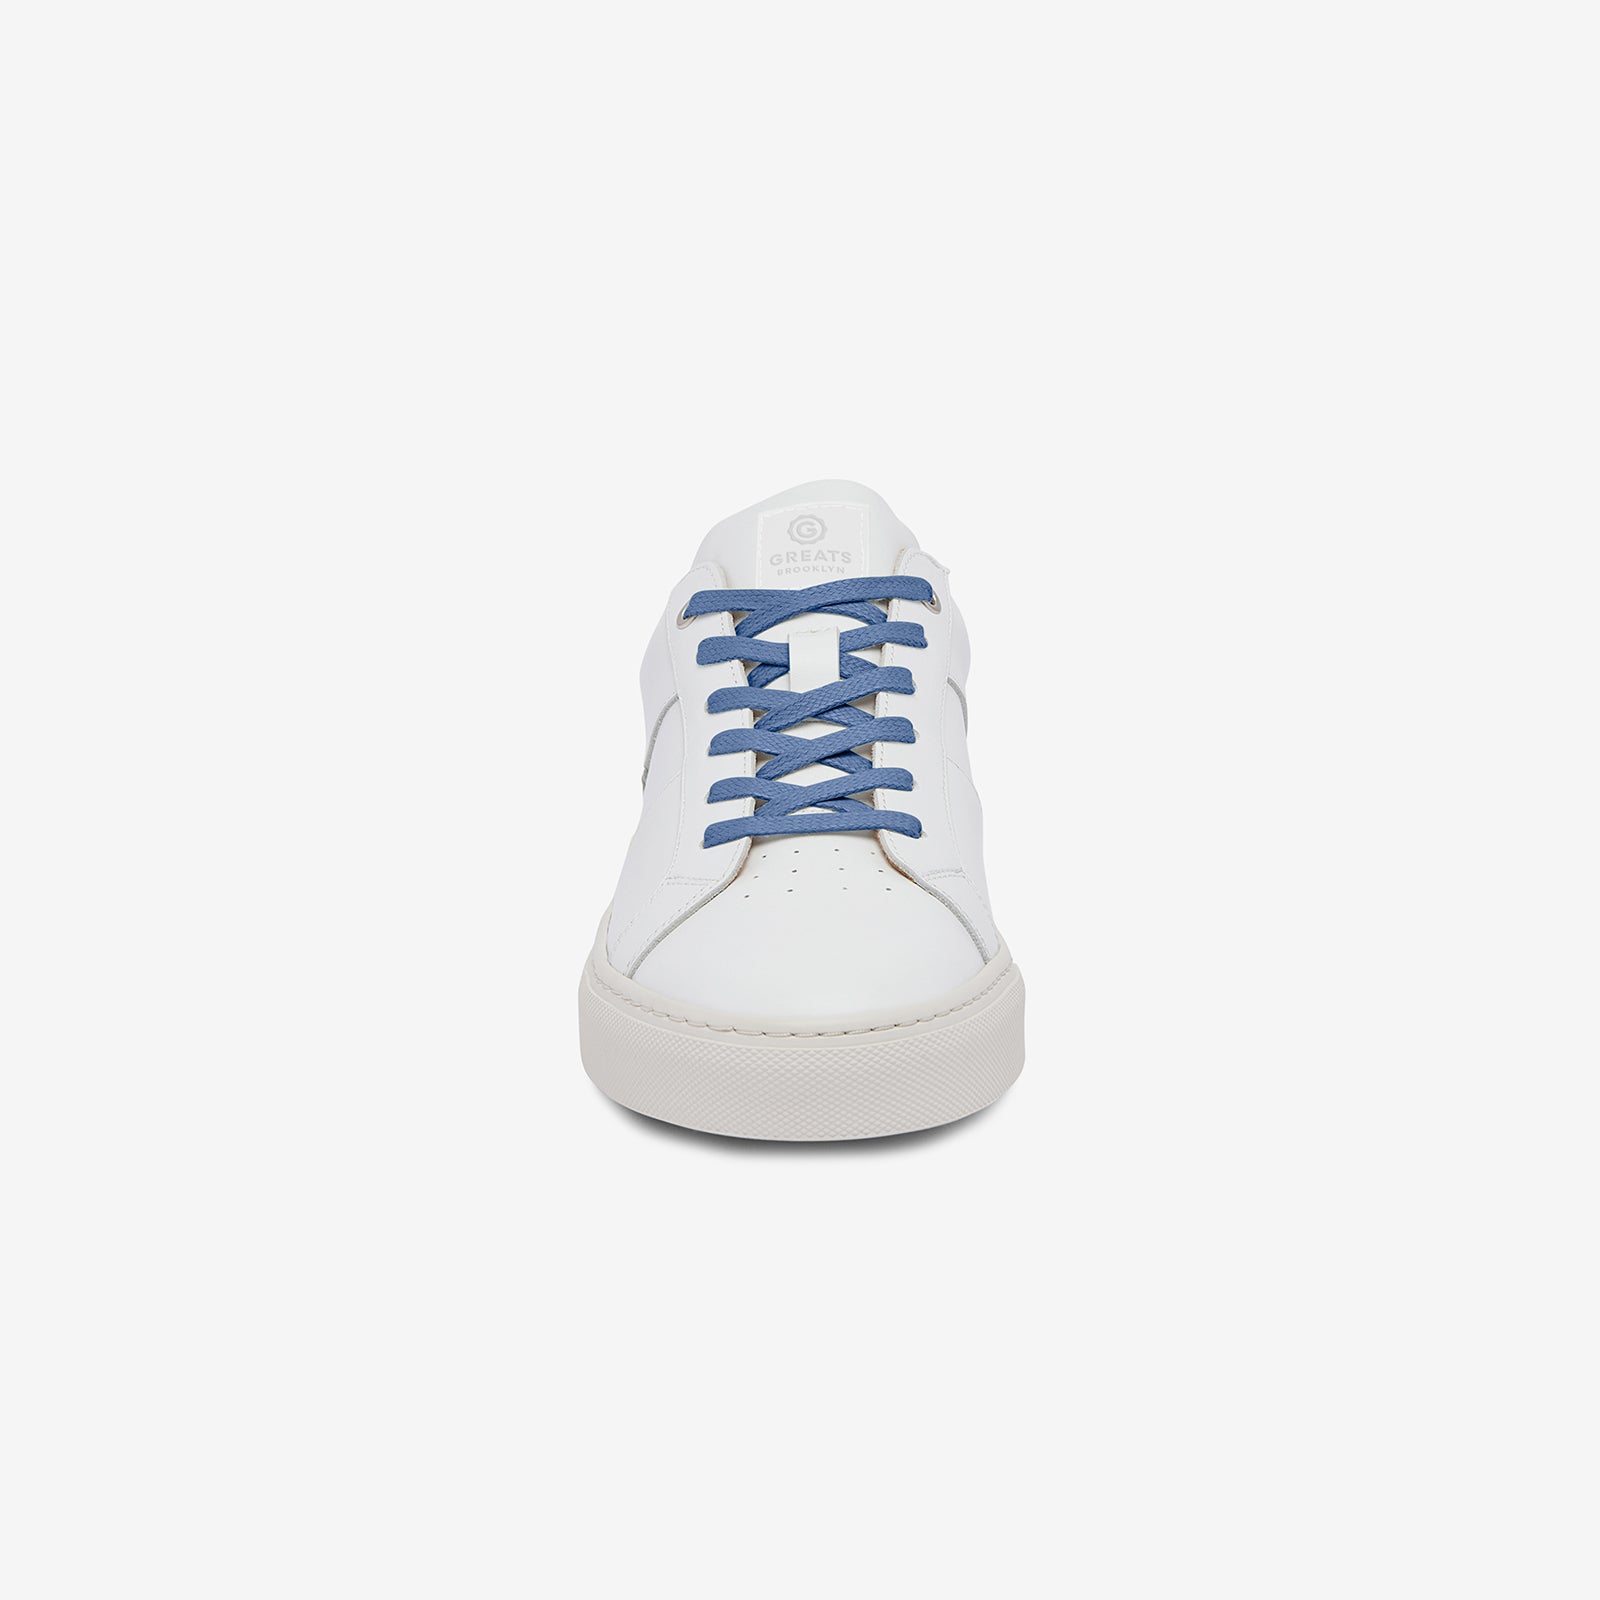 GREATS Premium Shoelaces - Light Blue